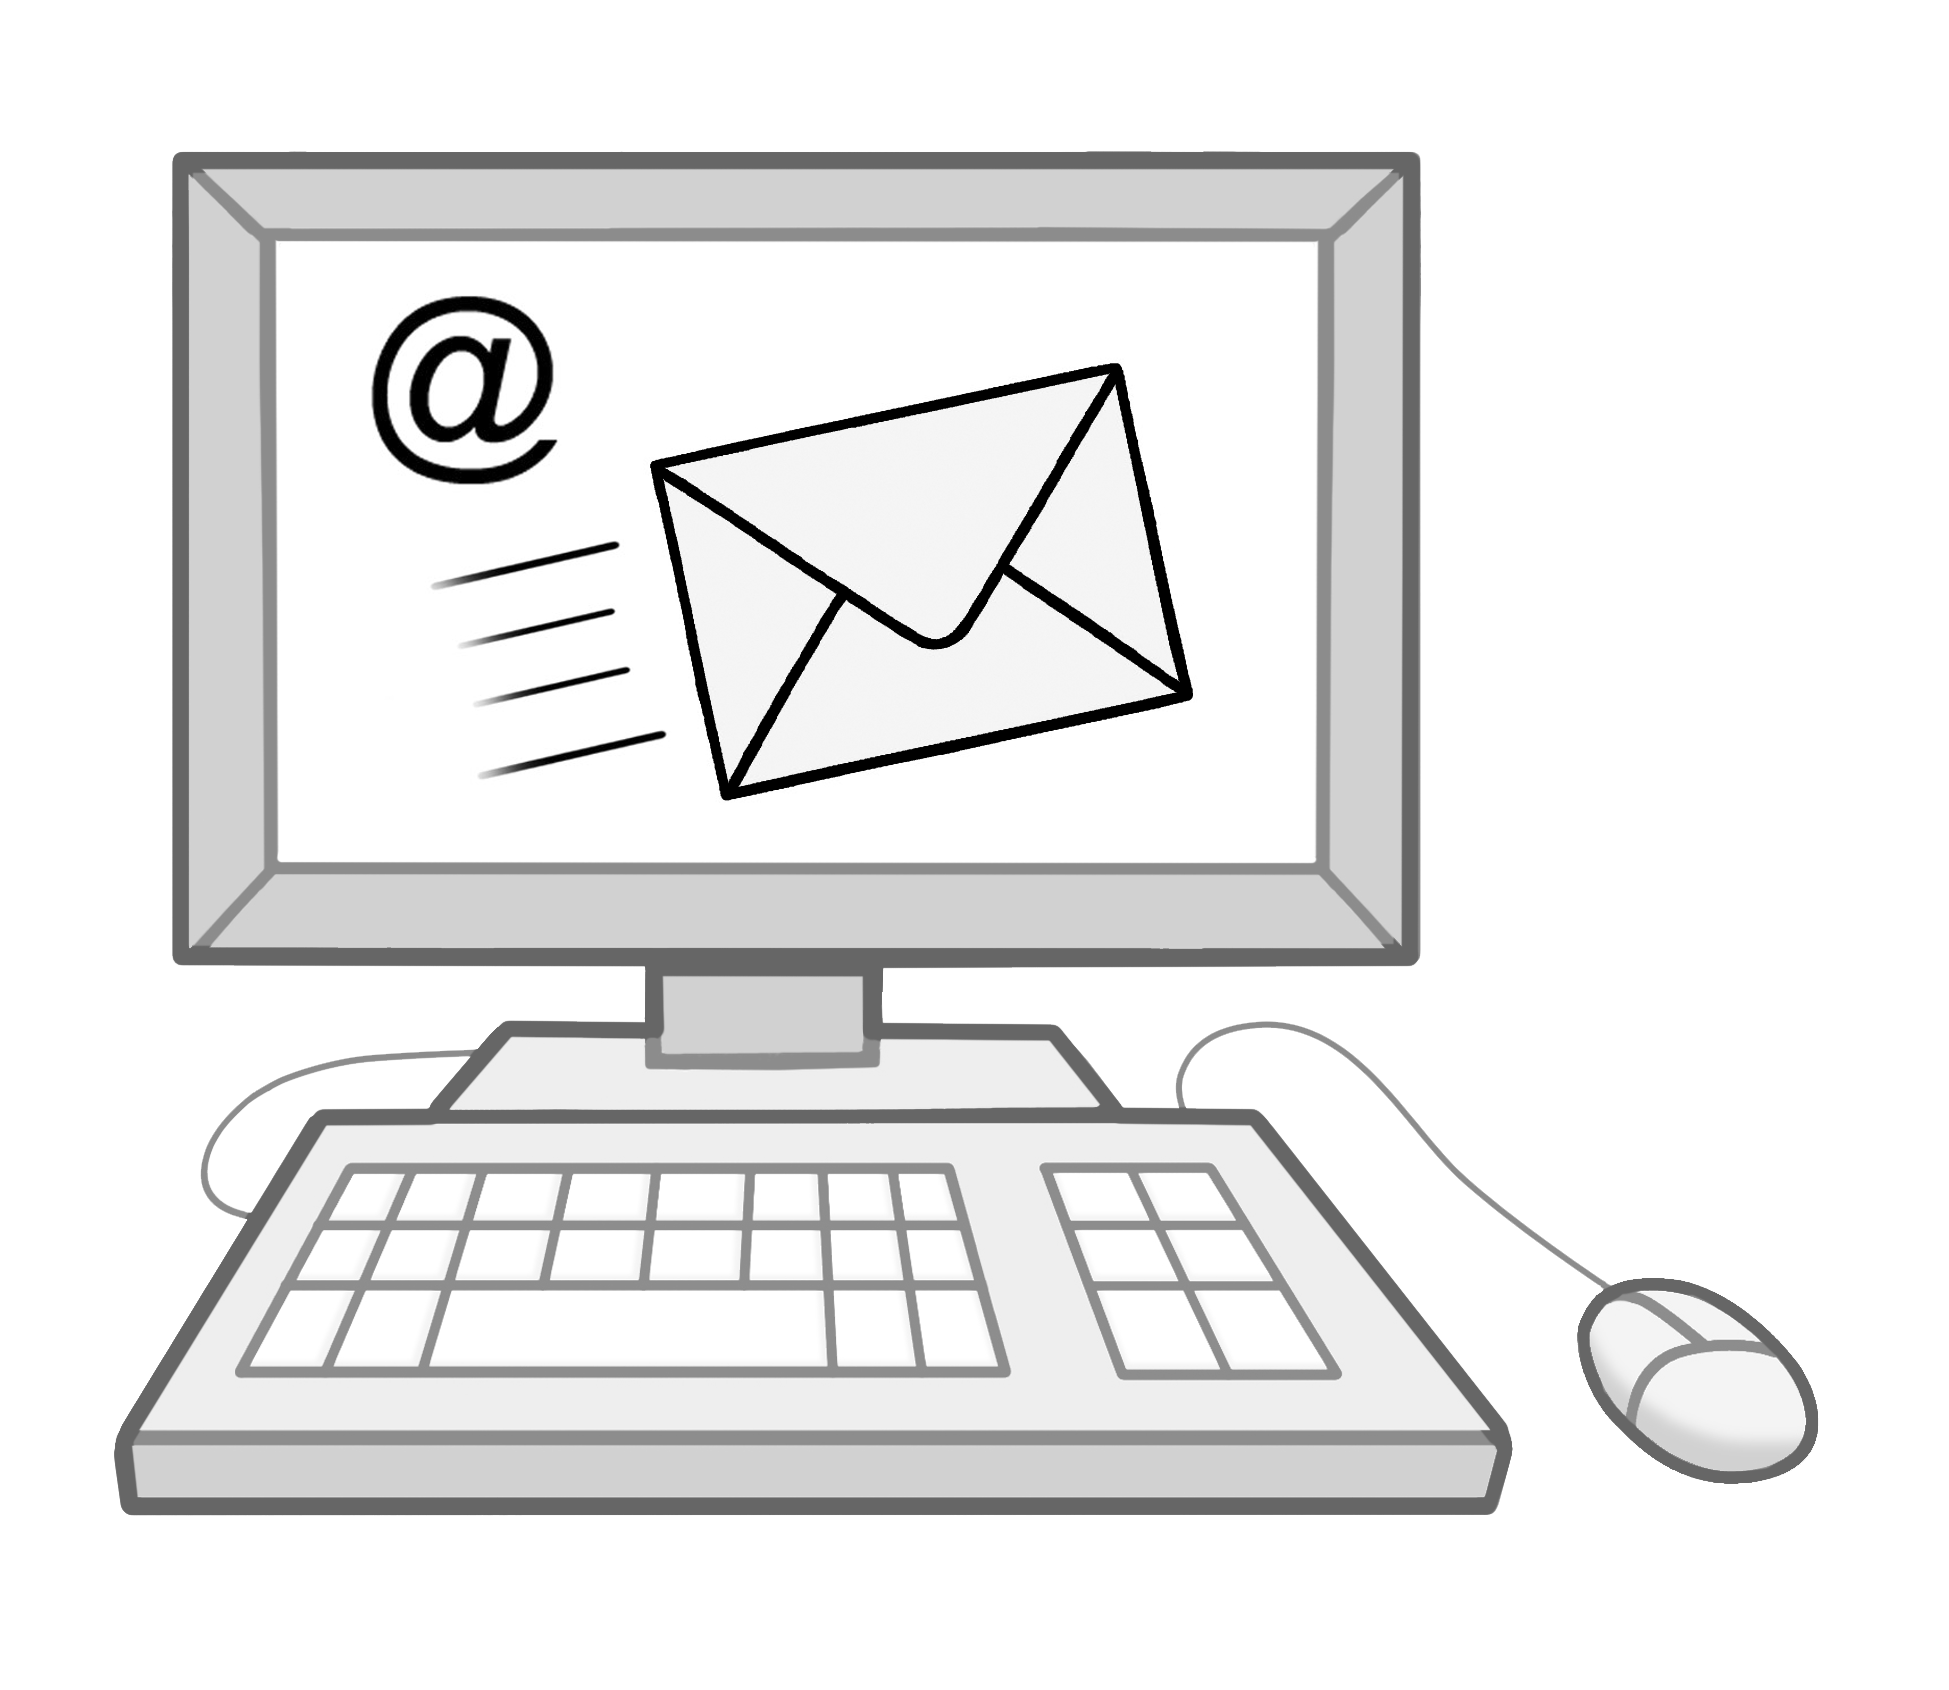 Gezeichneter Computer mit Emailzeichen auf dem Bildschirm.